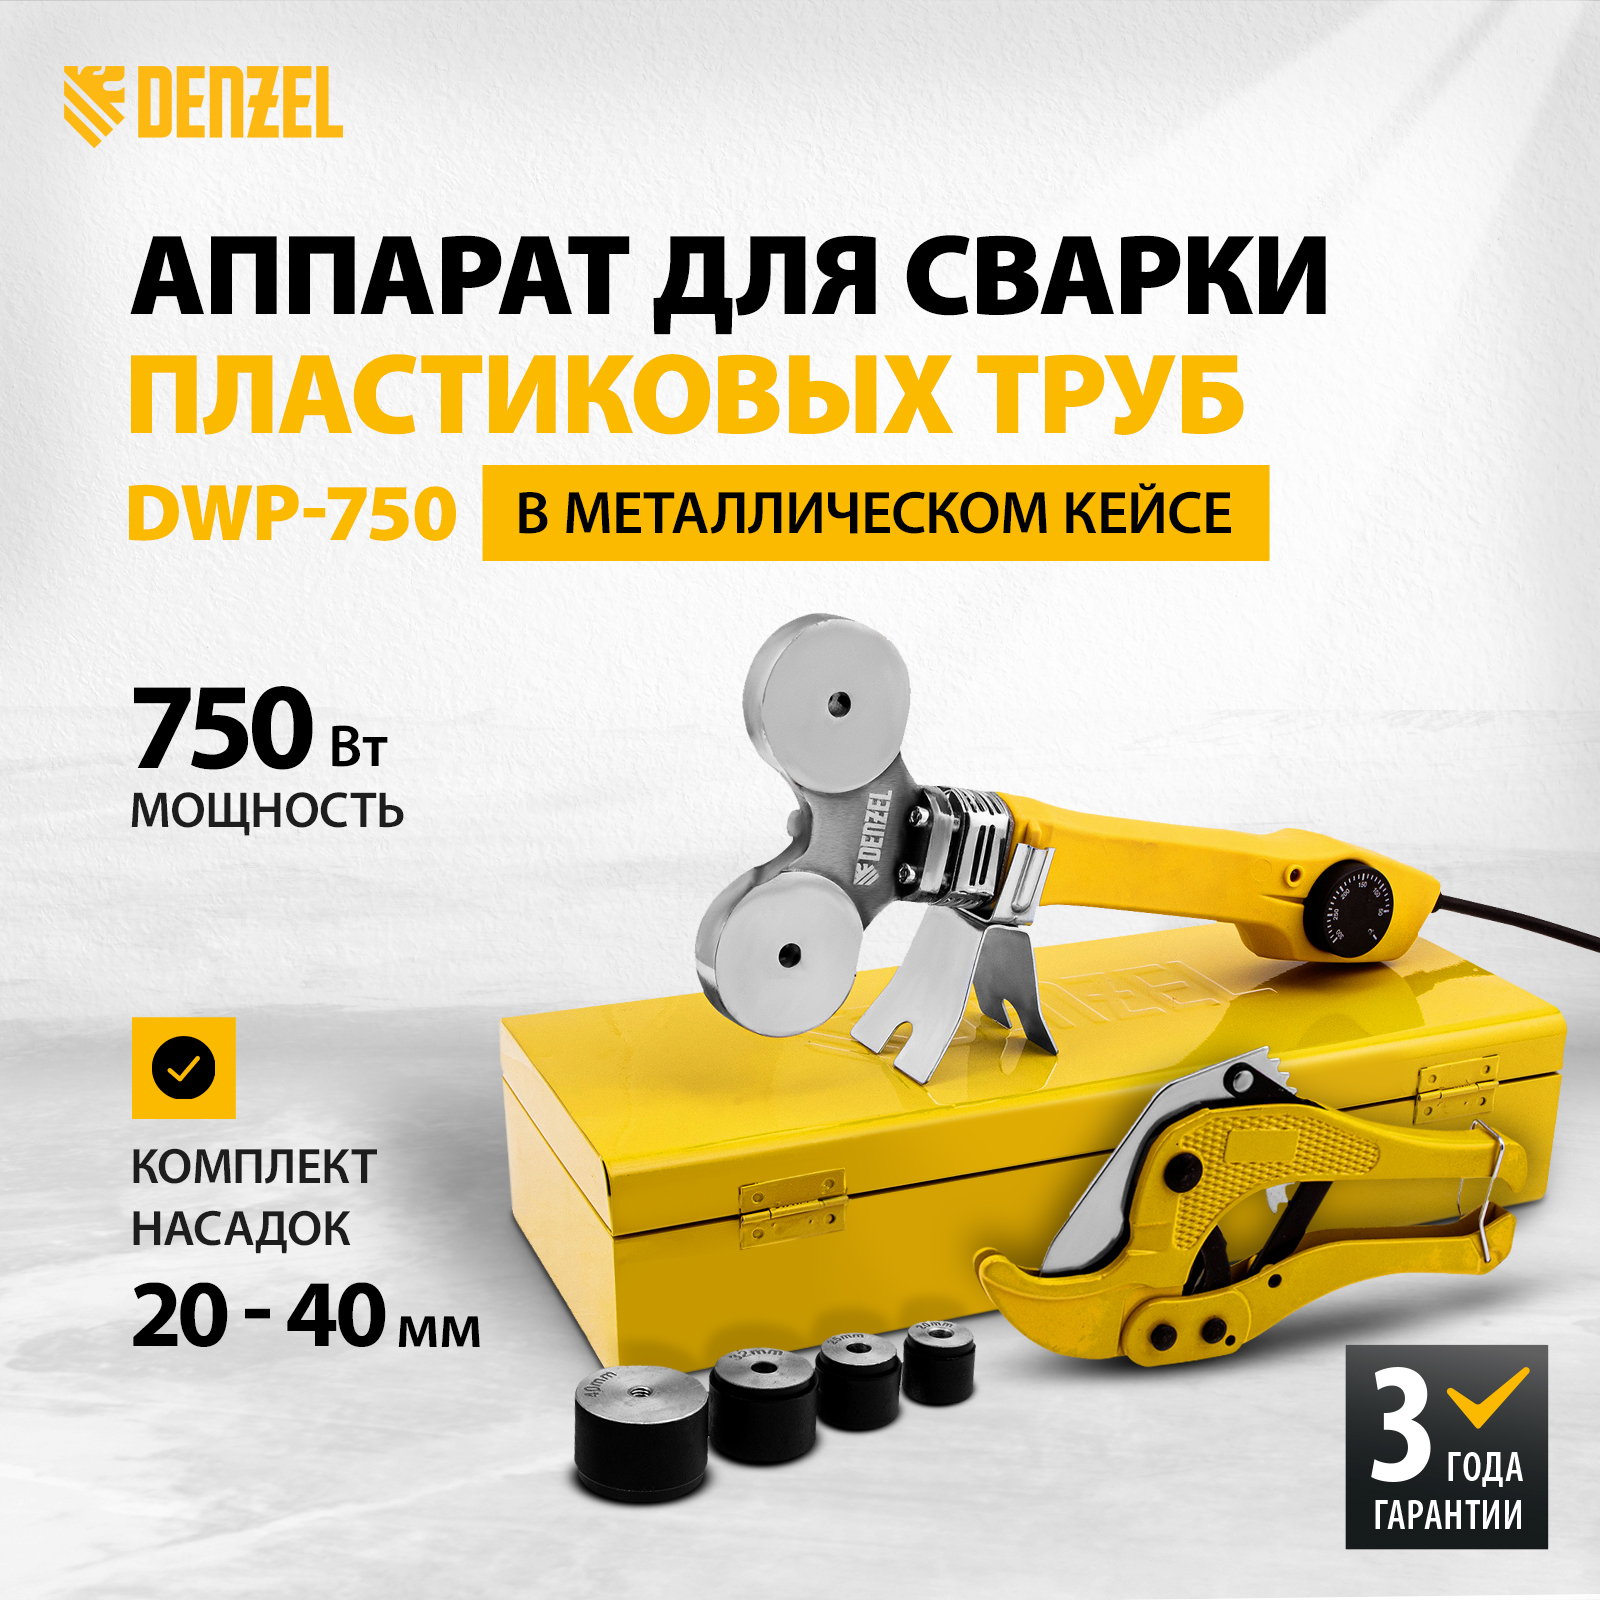 Сварочный аппарат для пластиковых труб DWP-750 DENZEL 94203 - купить в МИР ИНСТРУМЕНТА, цена на Мегамаркет